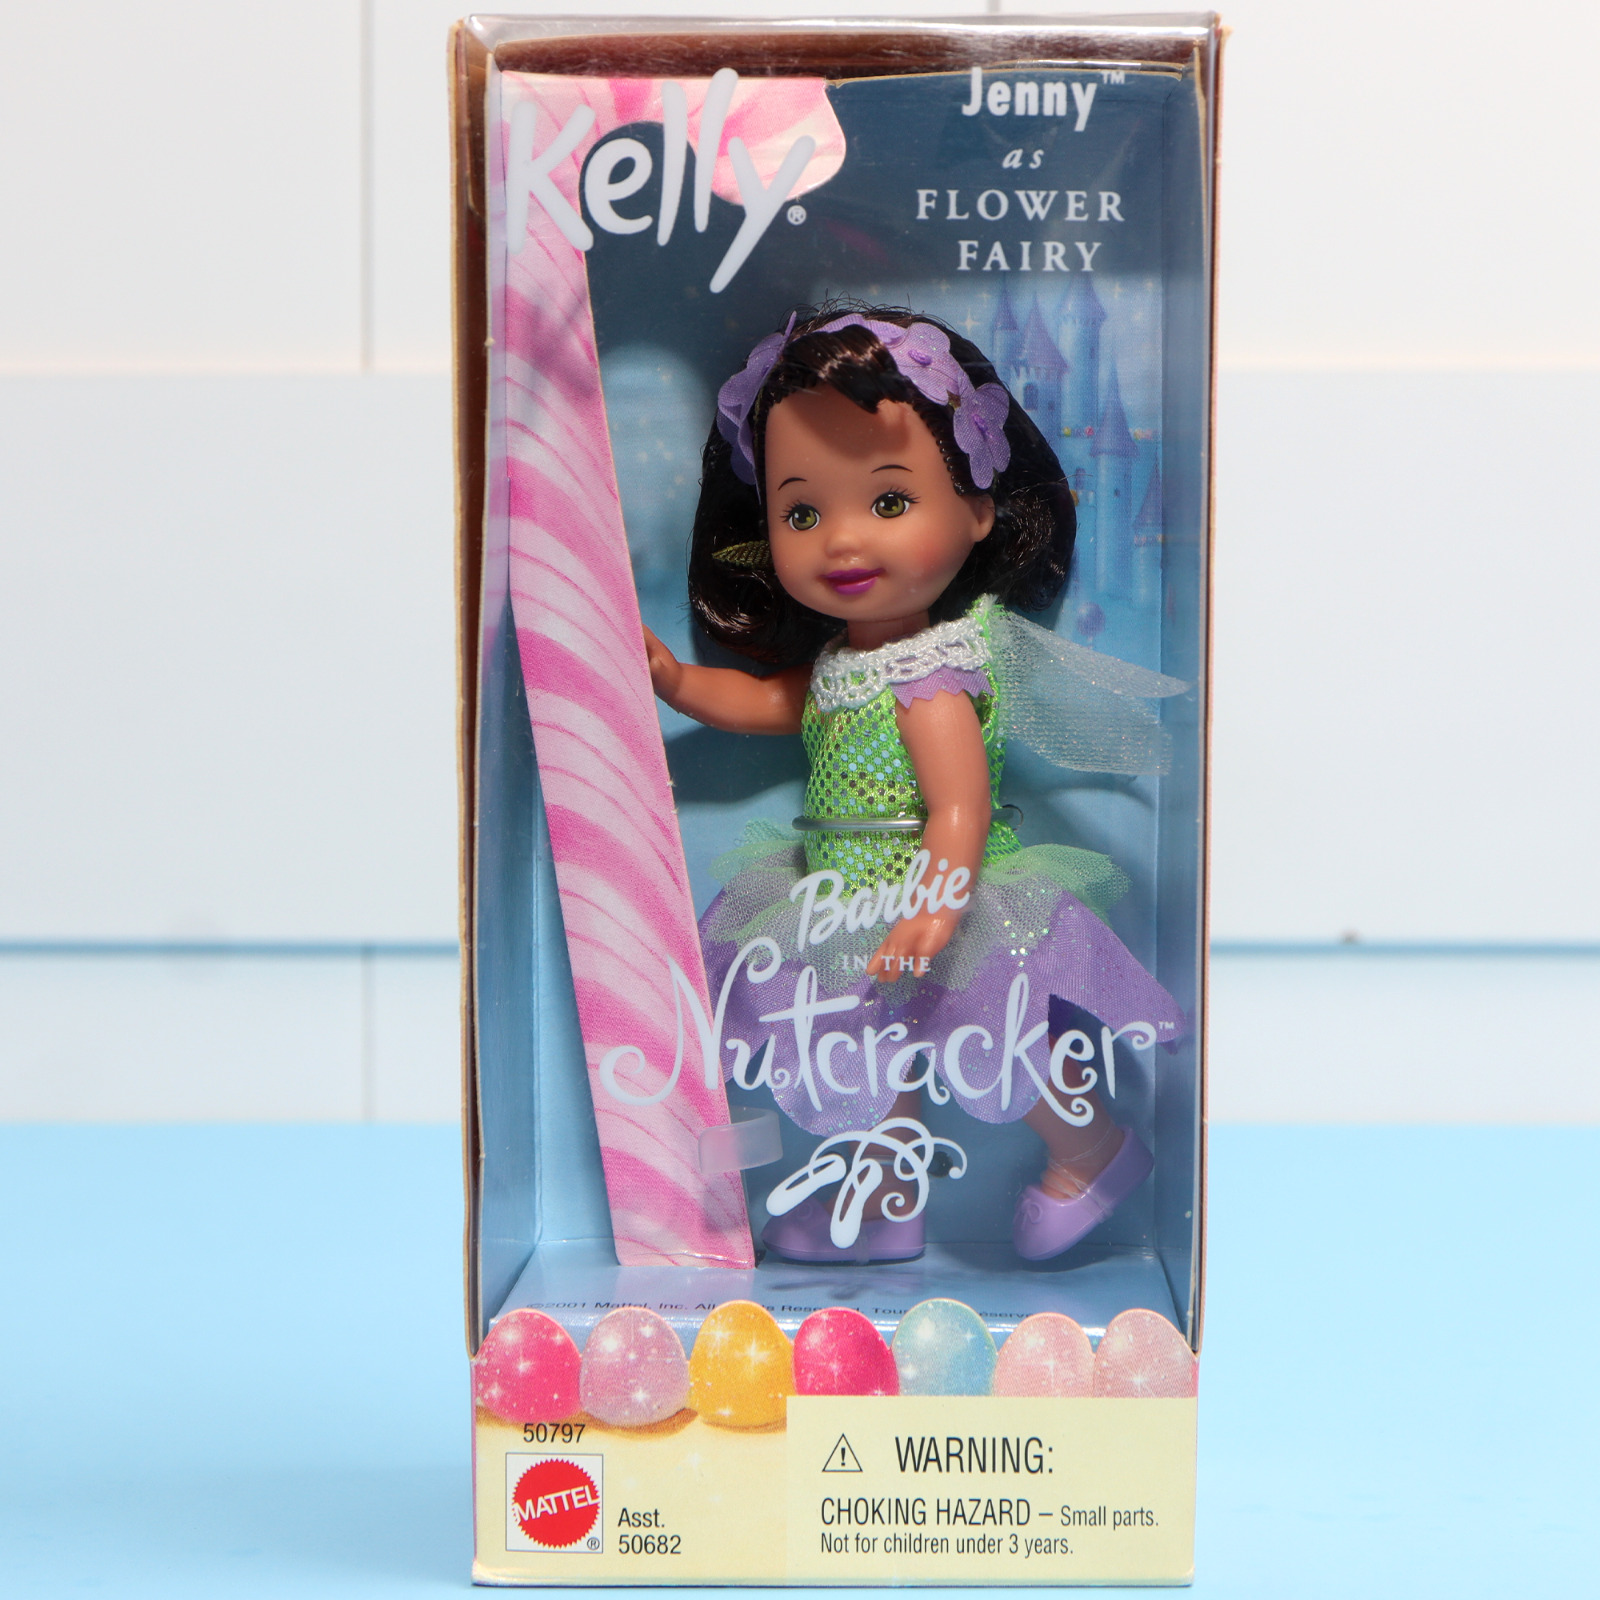 Barbie Kelly Jenny as Flower Fairy Nutcracker - 50797